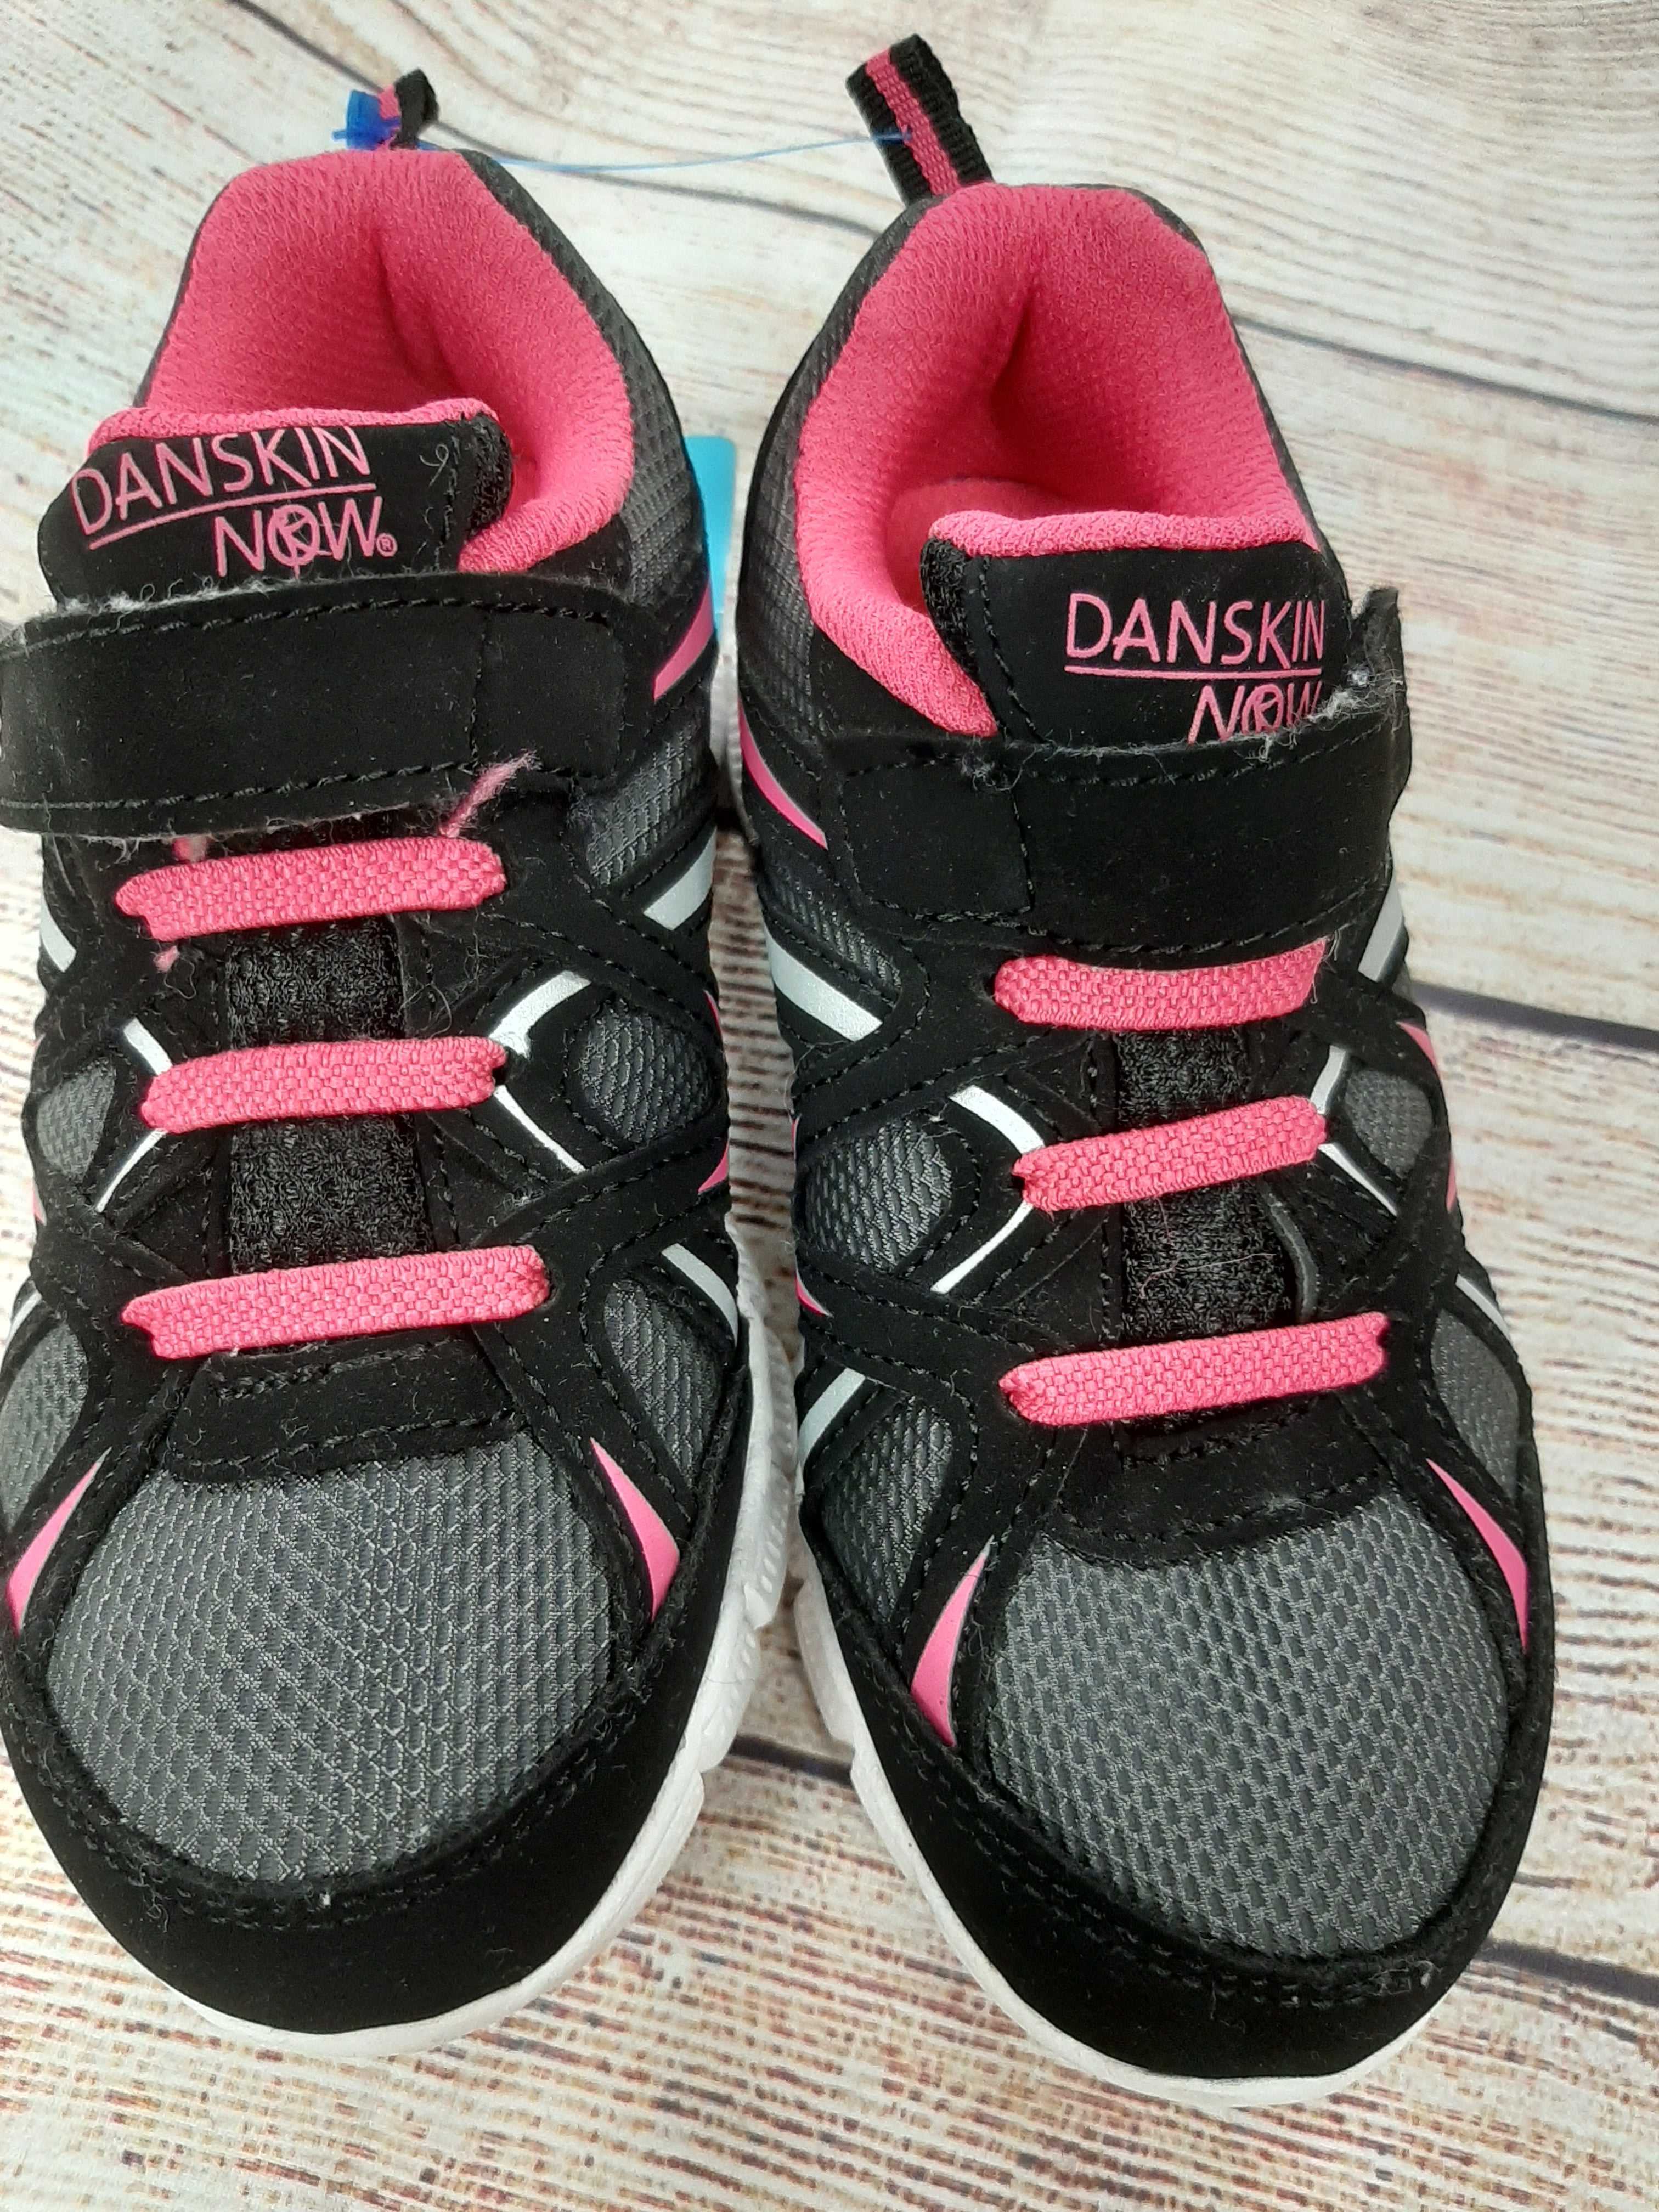 Danskin Now Black Shoes for Girls Sizes 2T-5T